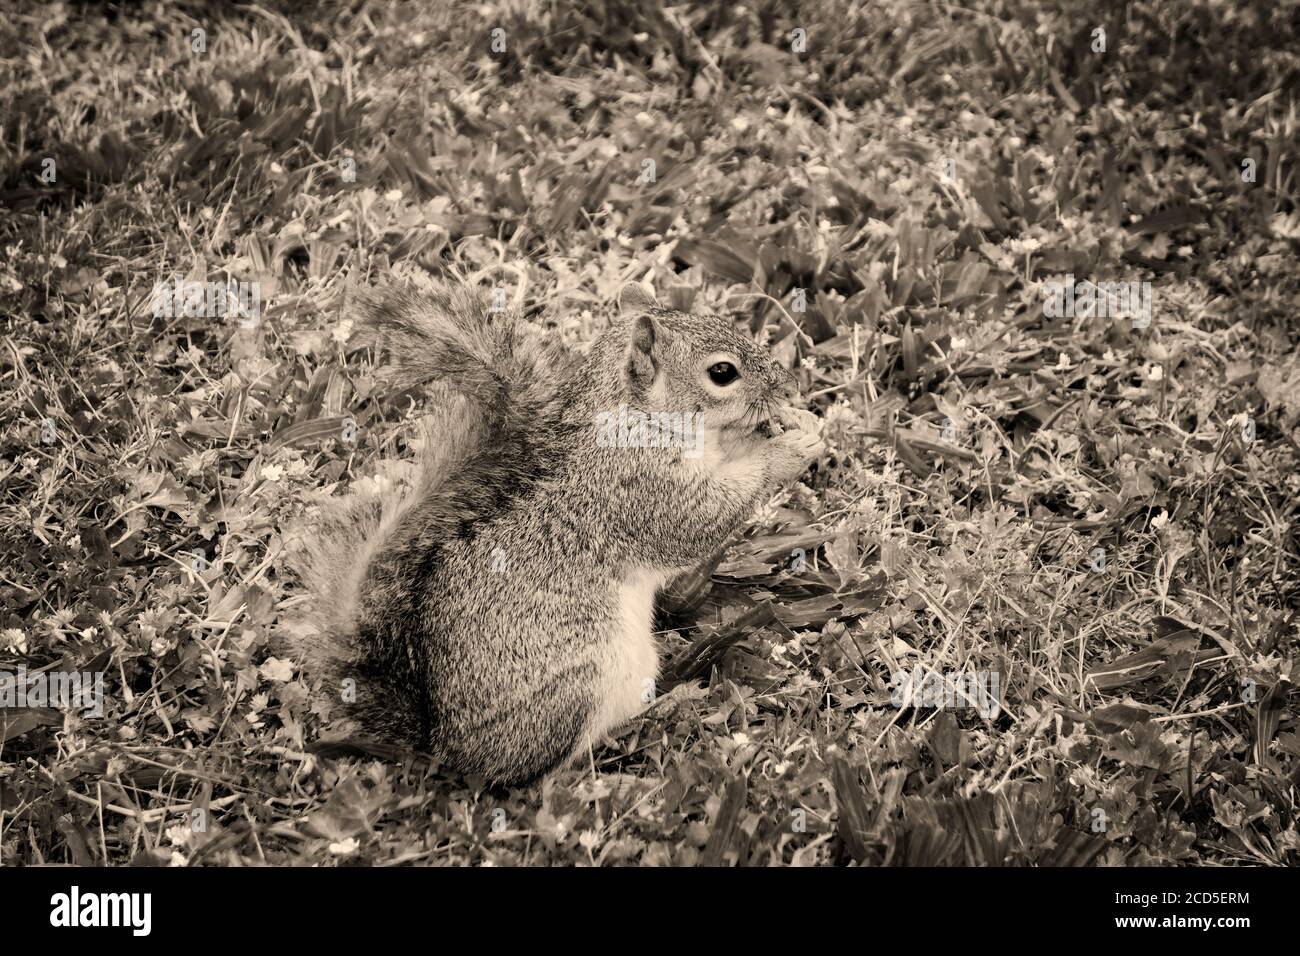 Photo de la nature noire et blanche de l'écureuil mangeant noix sur herbe Banque D'Images